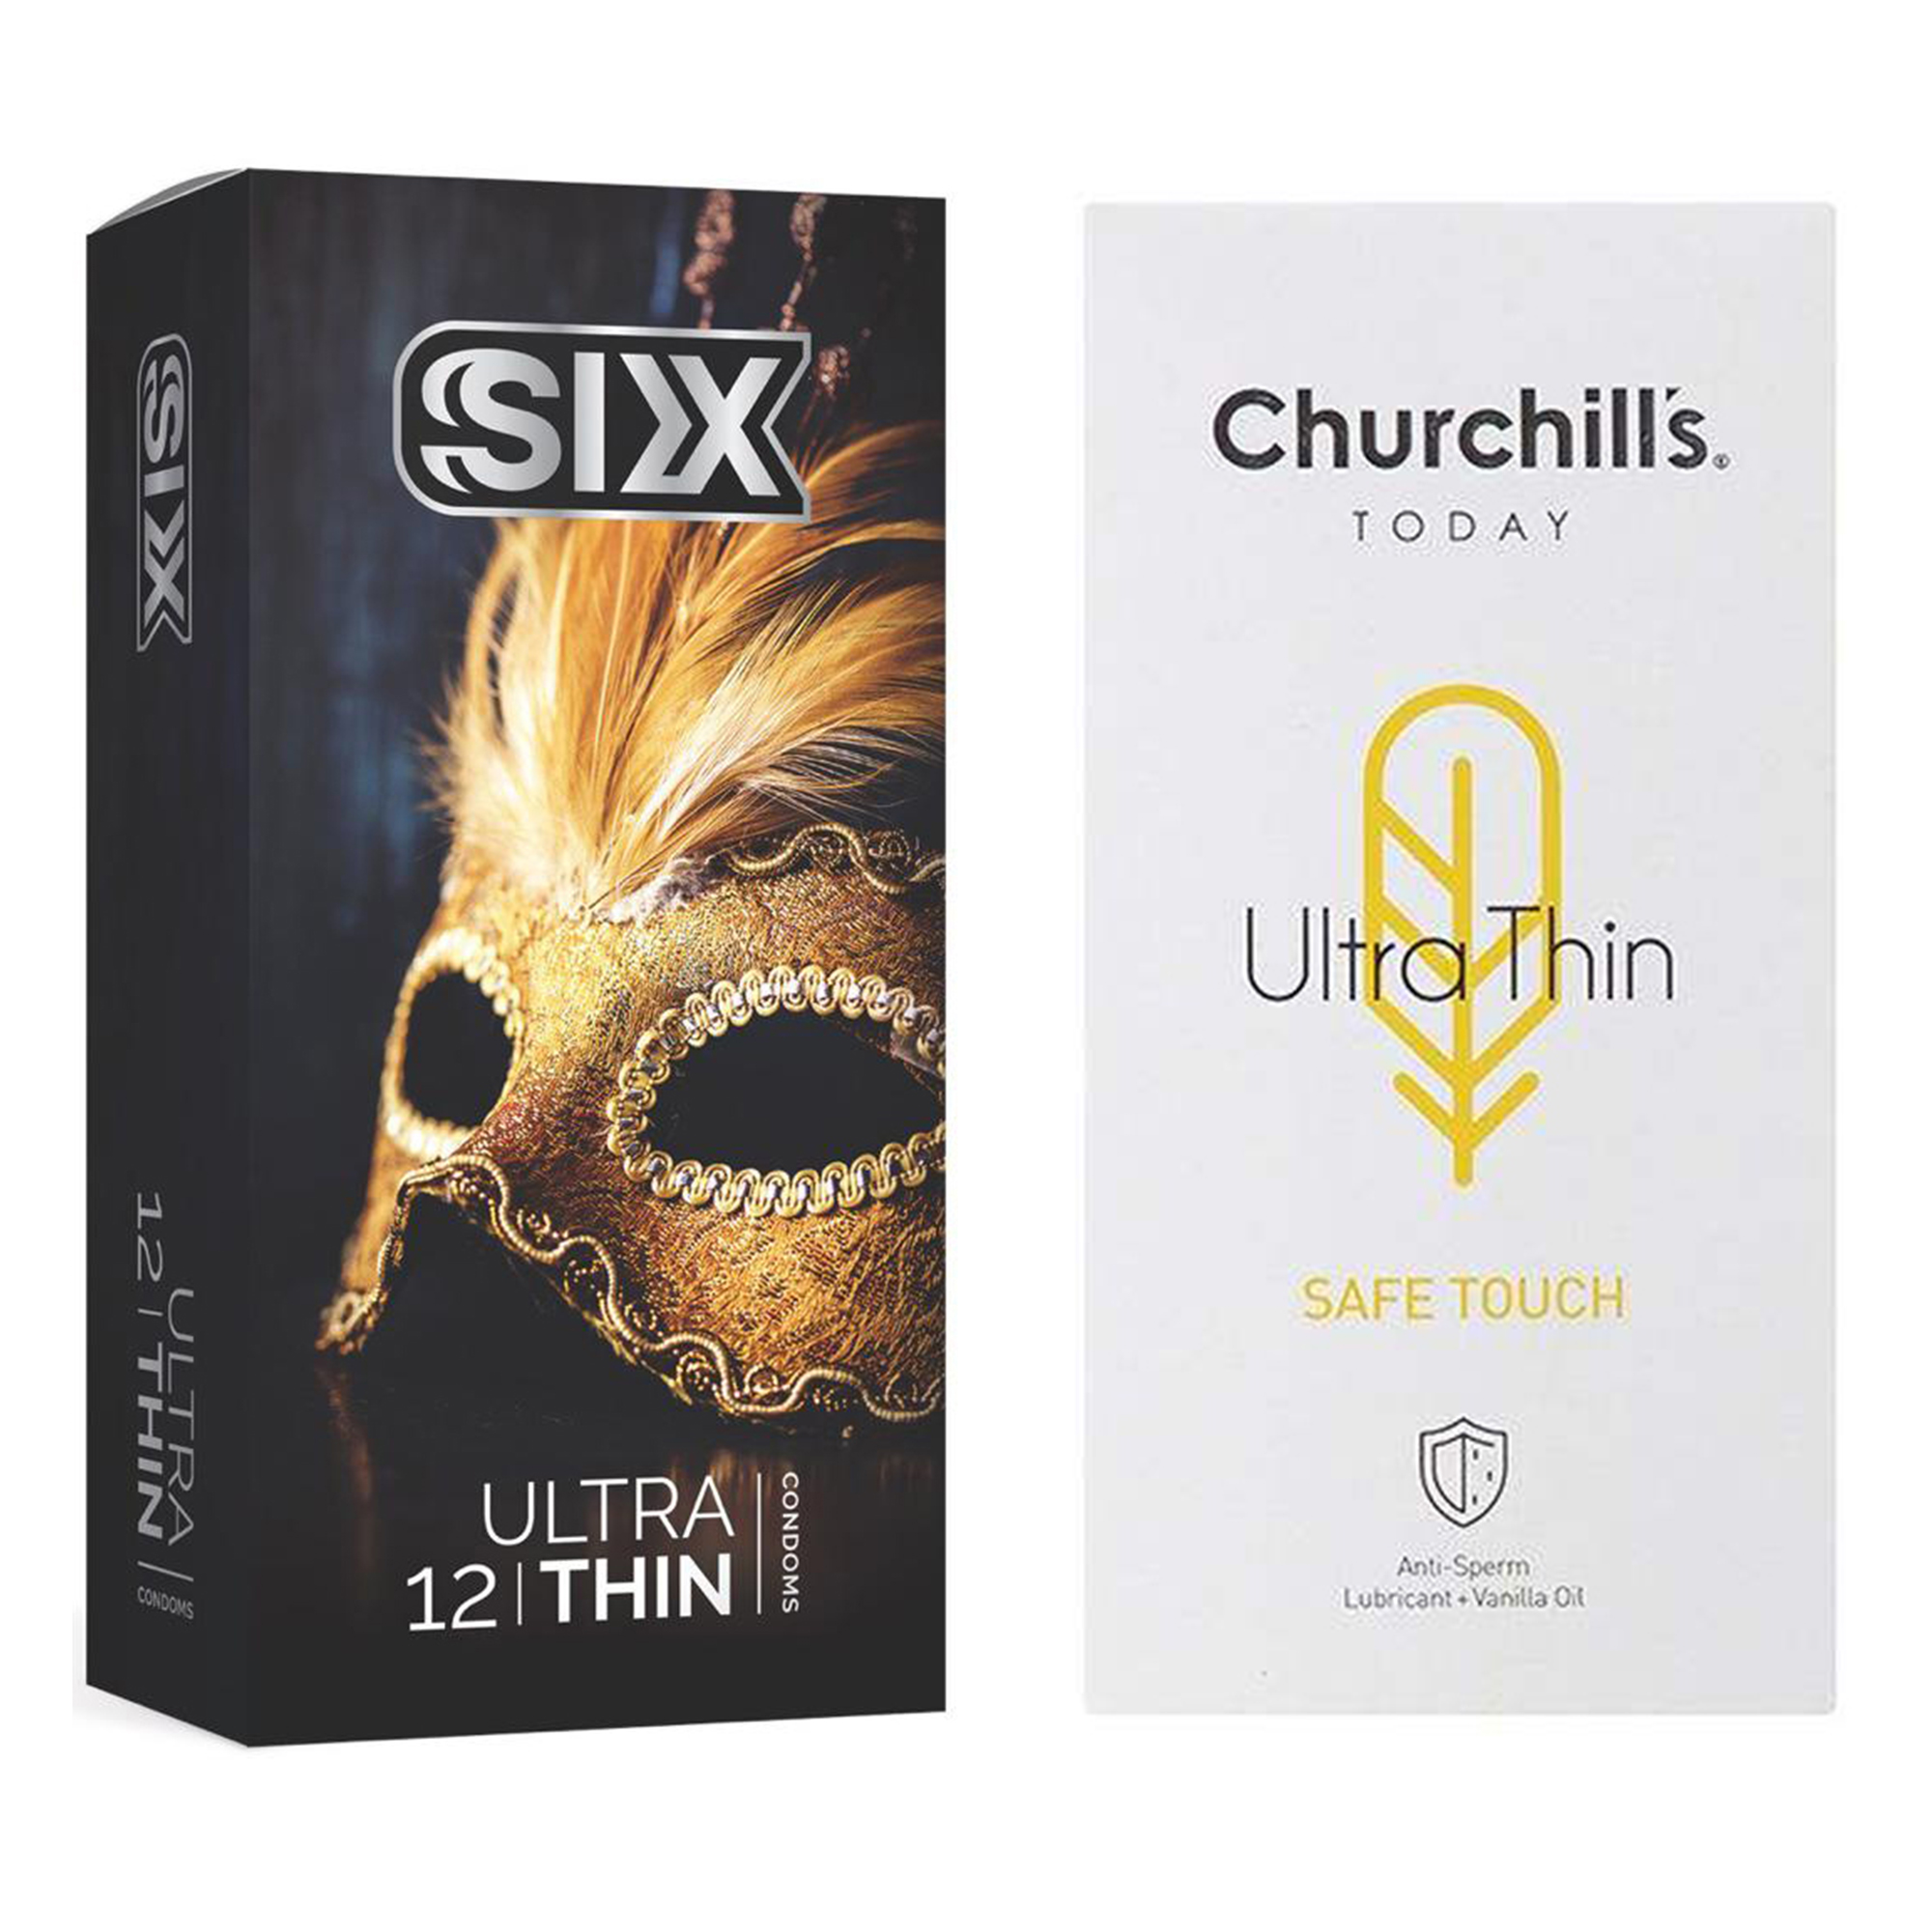 کاندوم چرچیلز مدل Safe Touch بسته 12 عددی به همراه کاندوم سیکس مدل حساس و فوق العاده نازک بسته 12 عددی